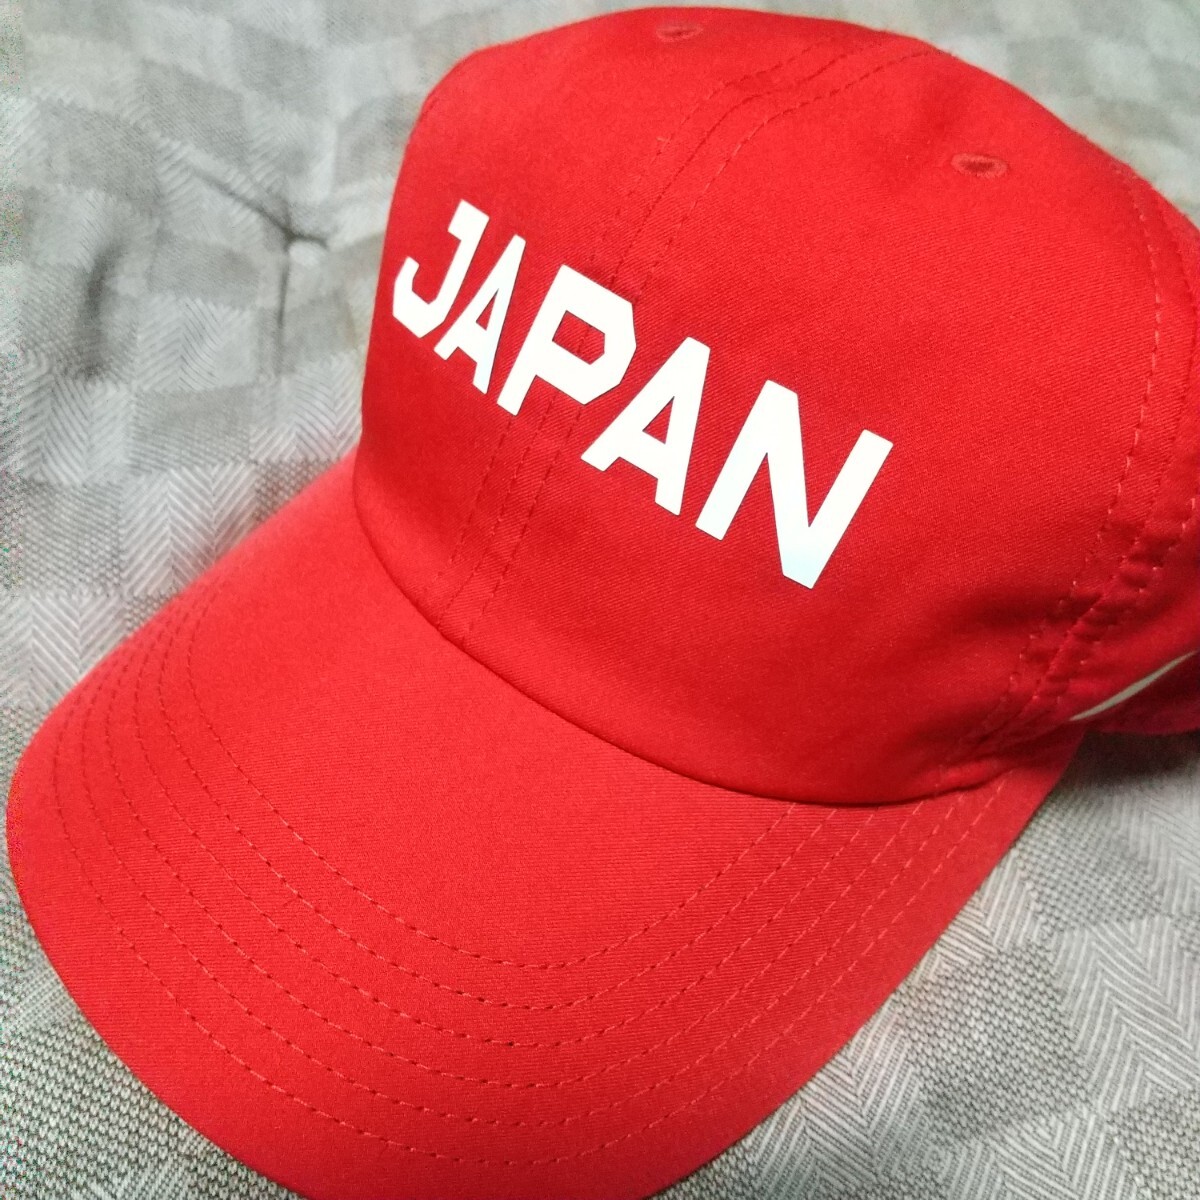 ナイキKIDSキャップ 赤 JAPAN 子供ぼうし NIKE 帽子